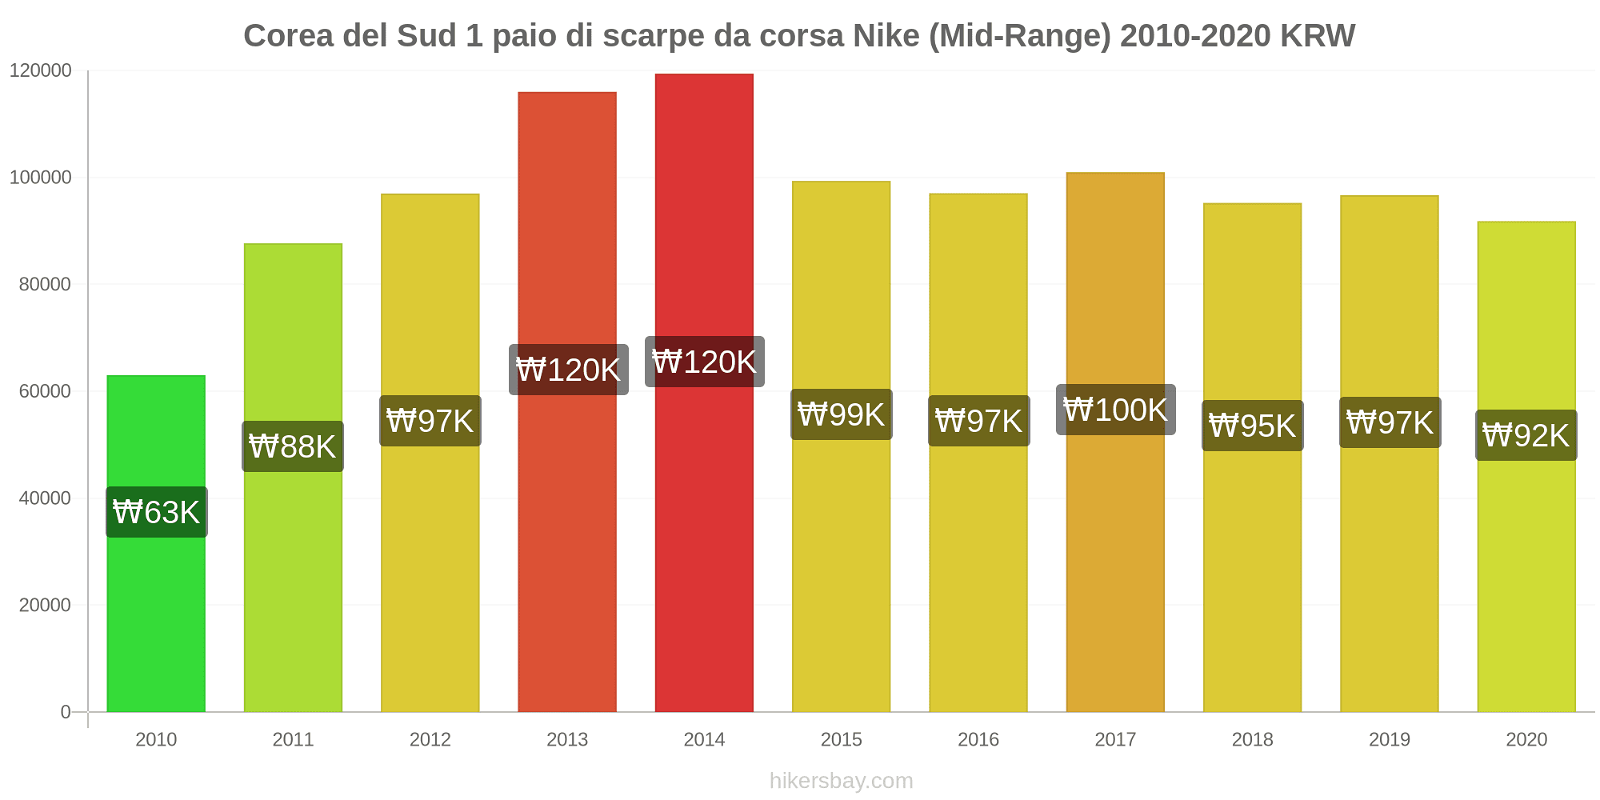 Corea del Sud variazioni di prezzo 1 paio di scarpe da corsa Nike (simile) hikersbay.com